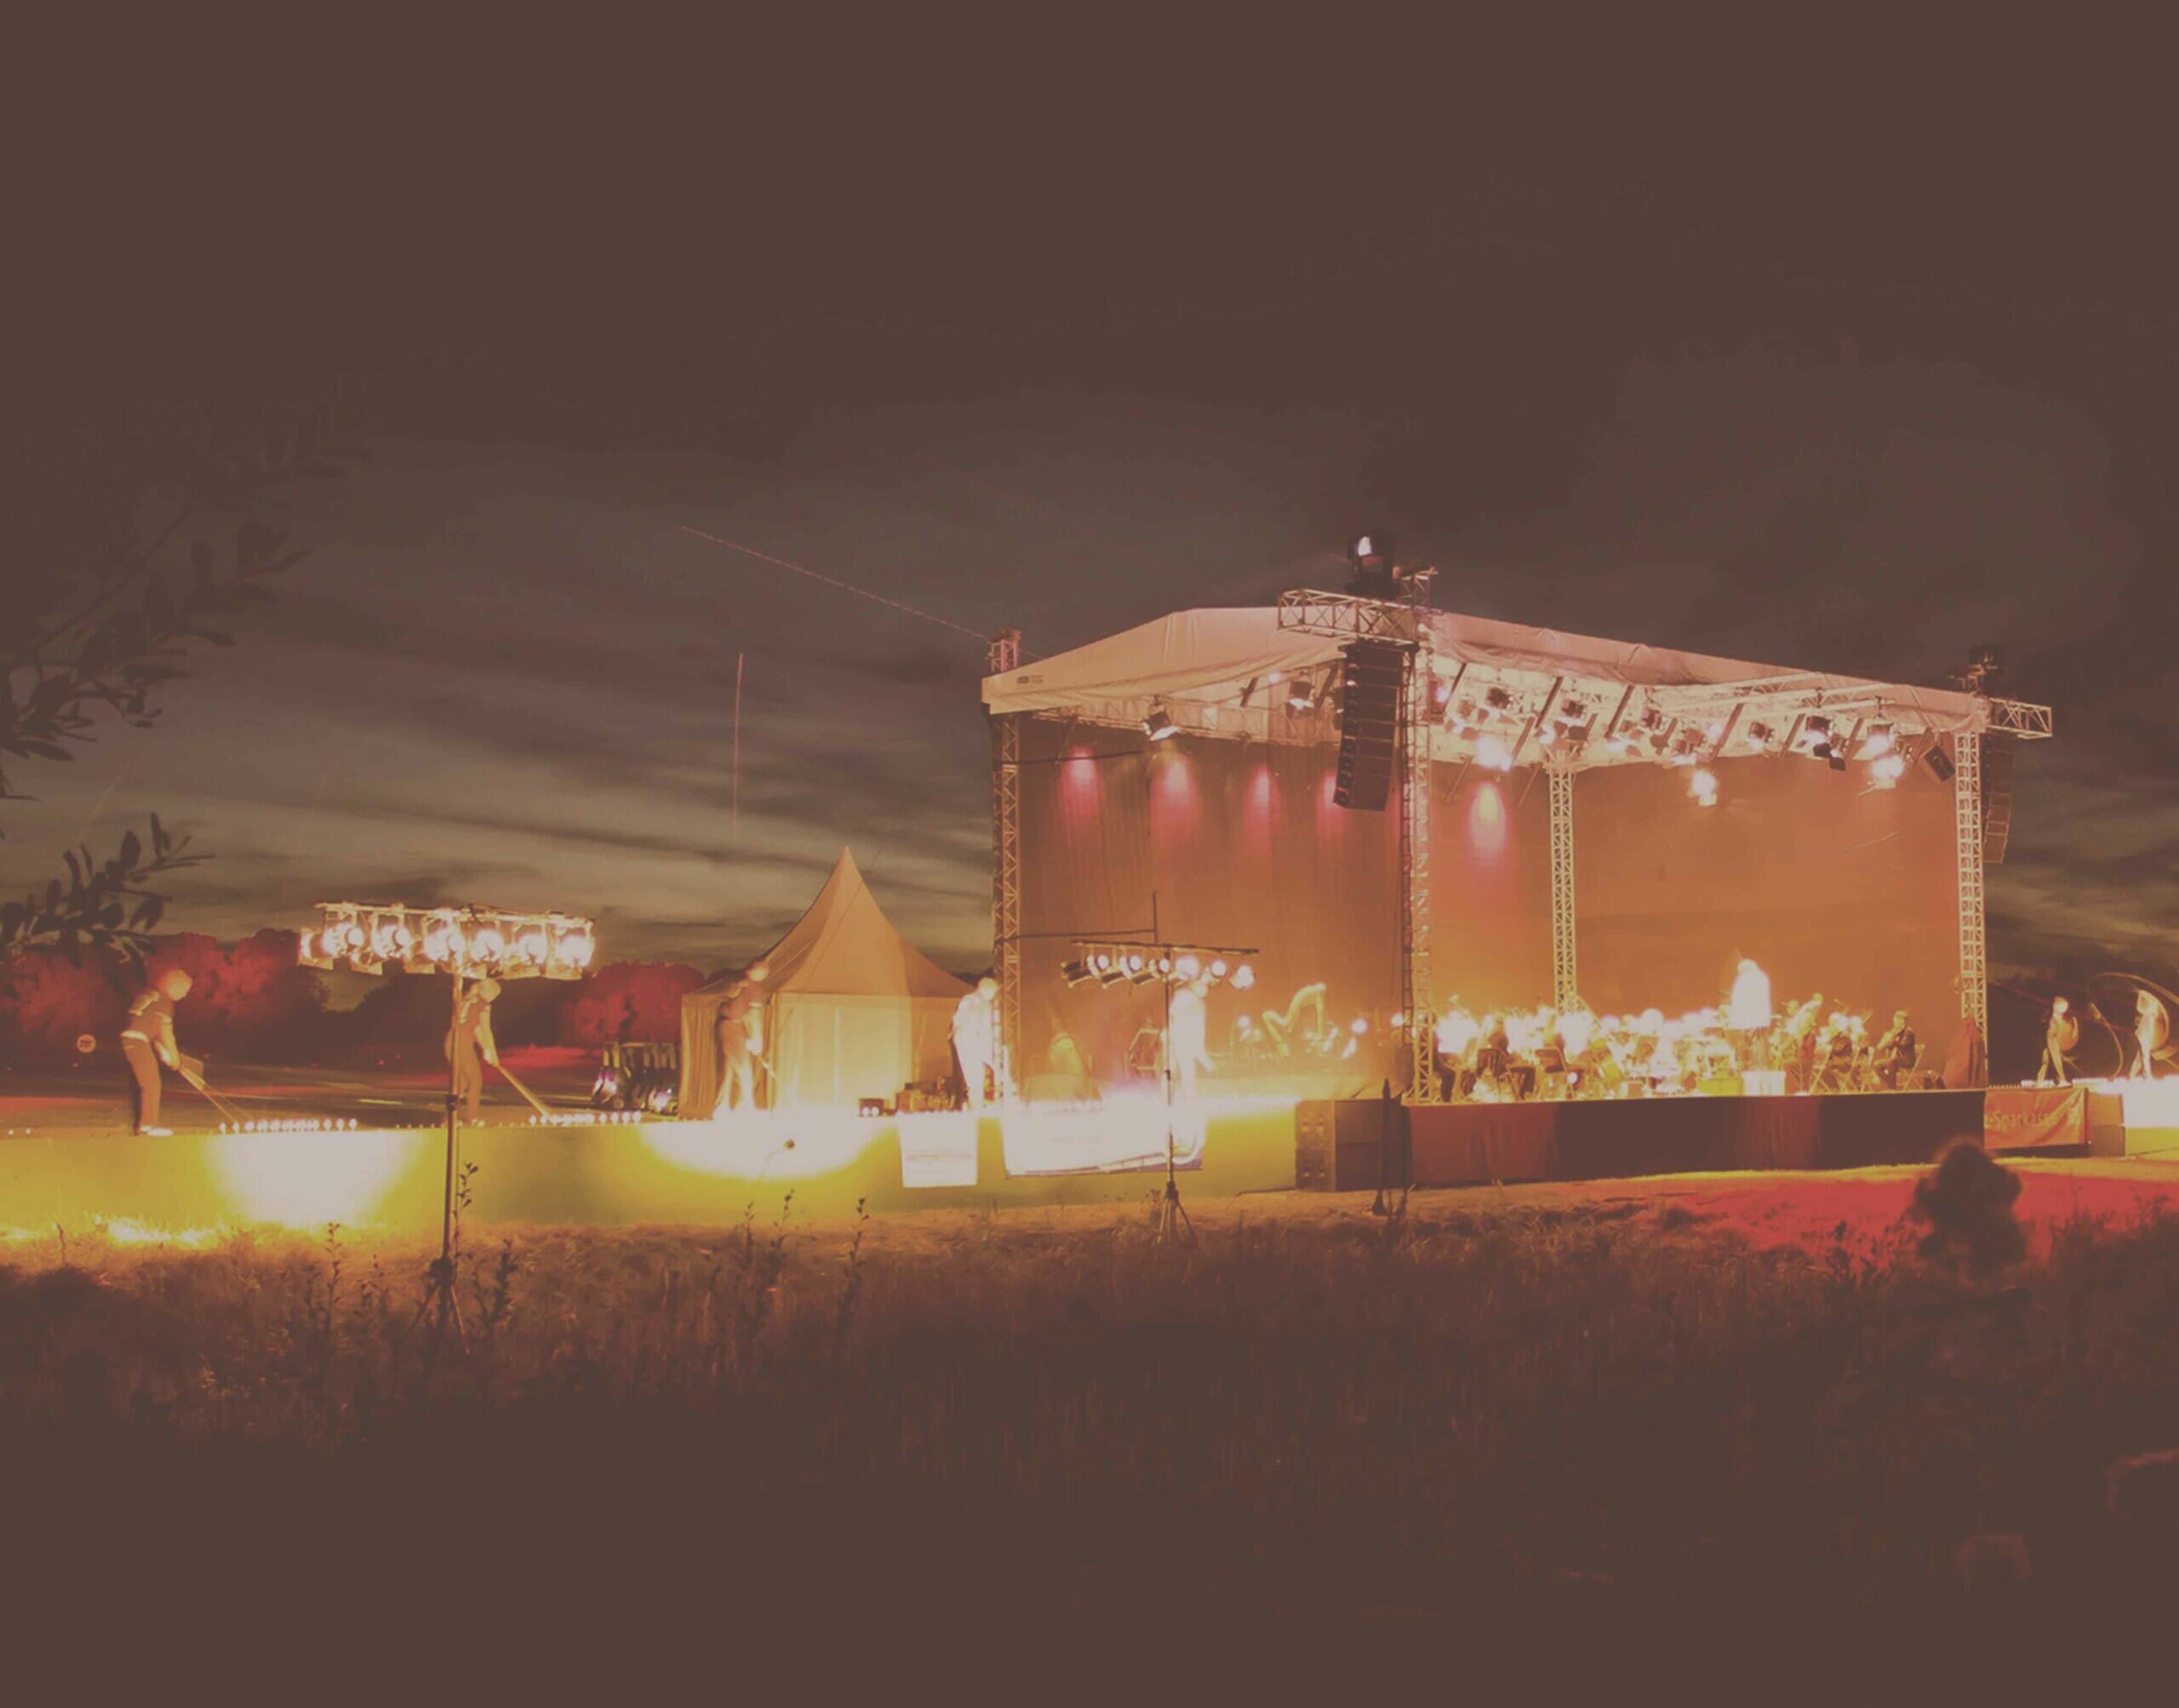 Eine Bühne auf der ein Event stattfindet bei Nacht.